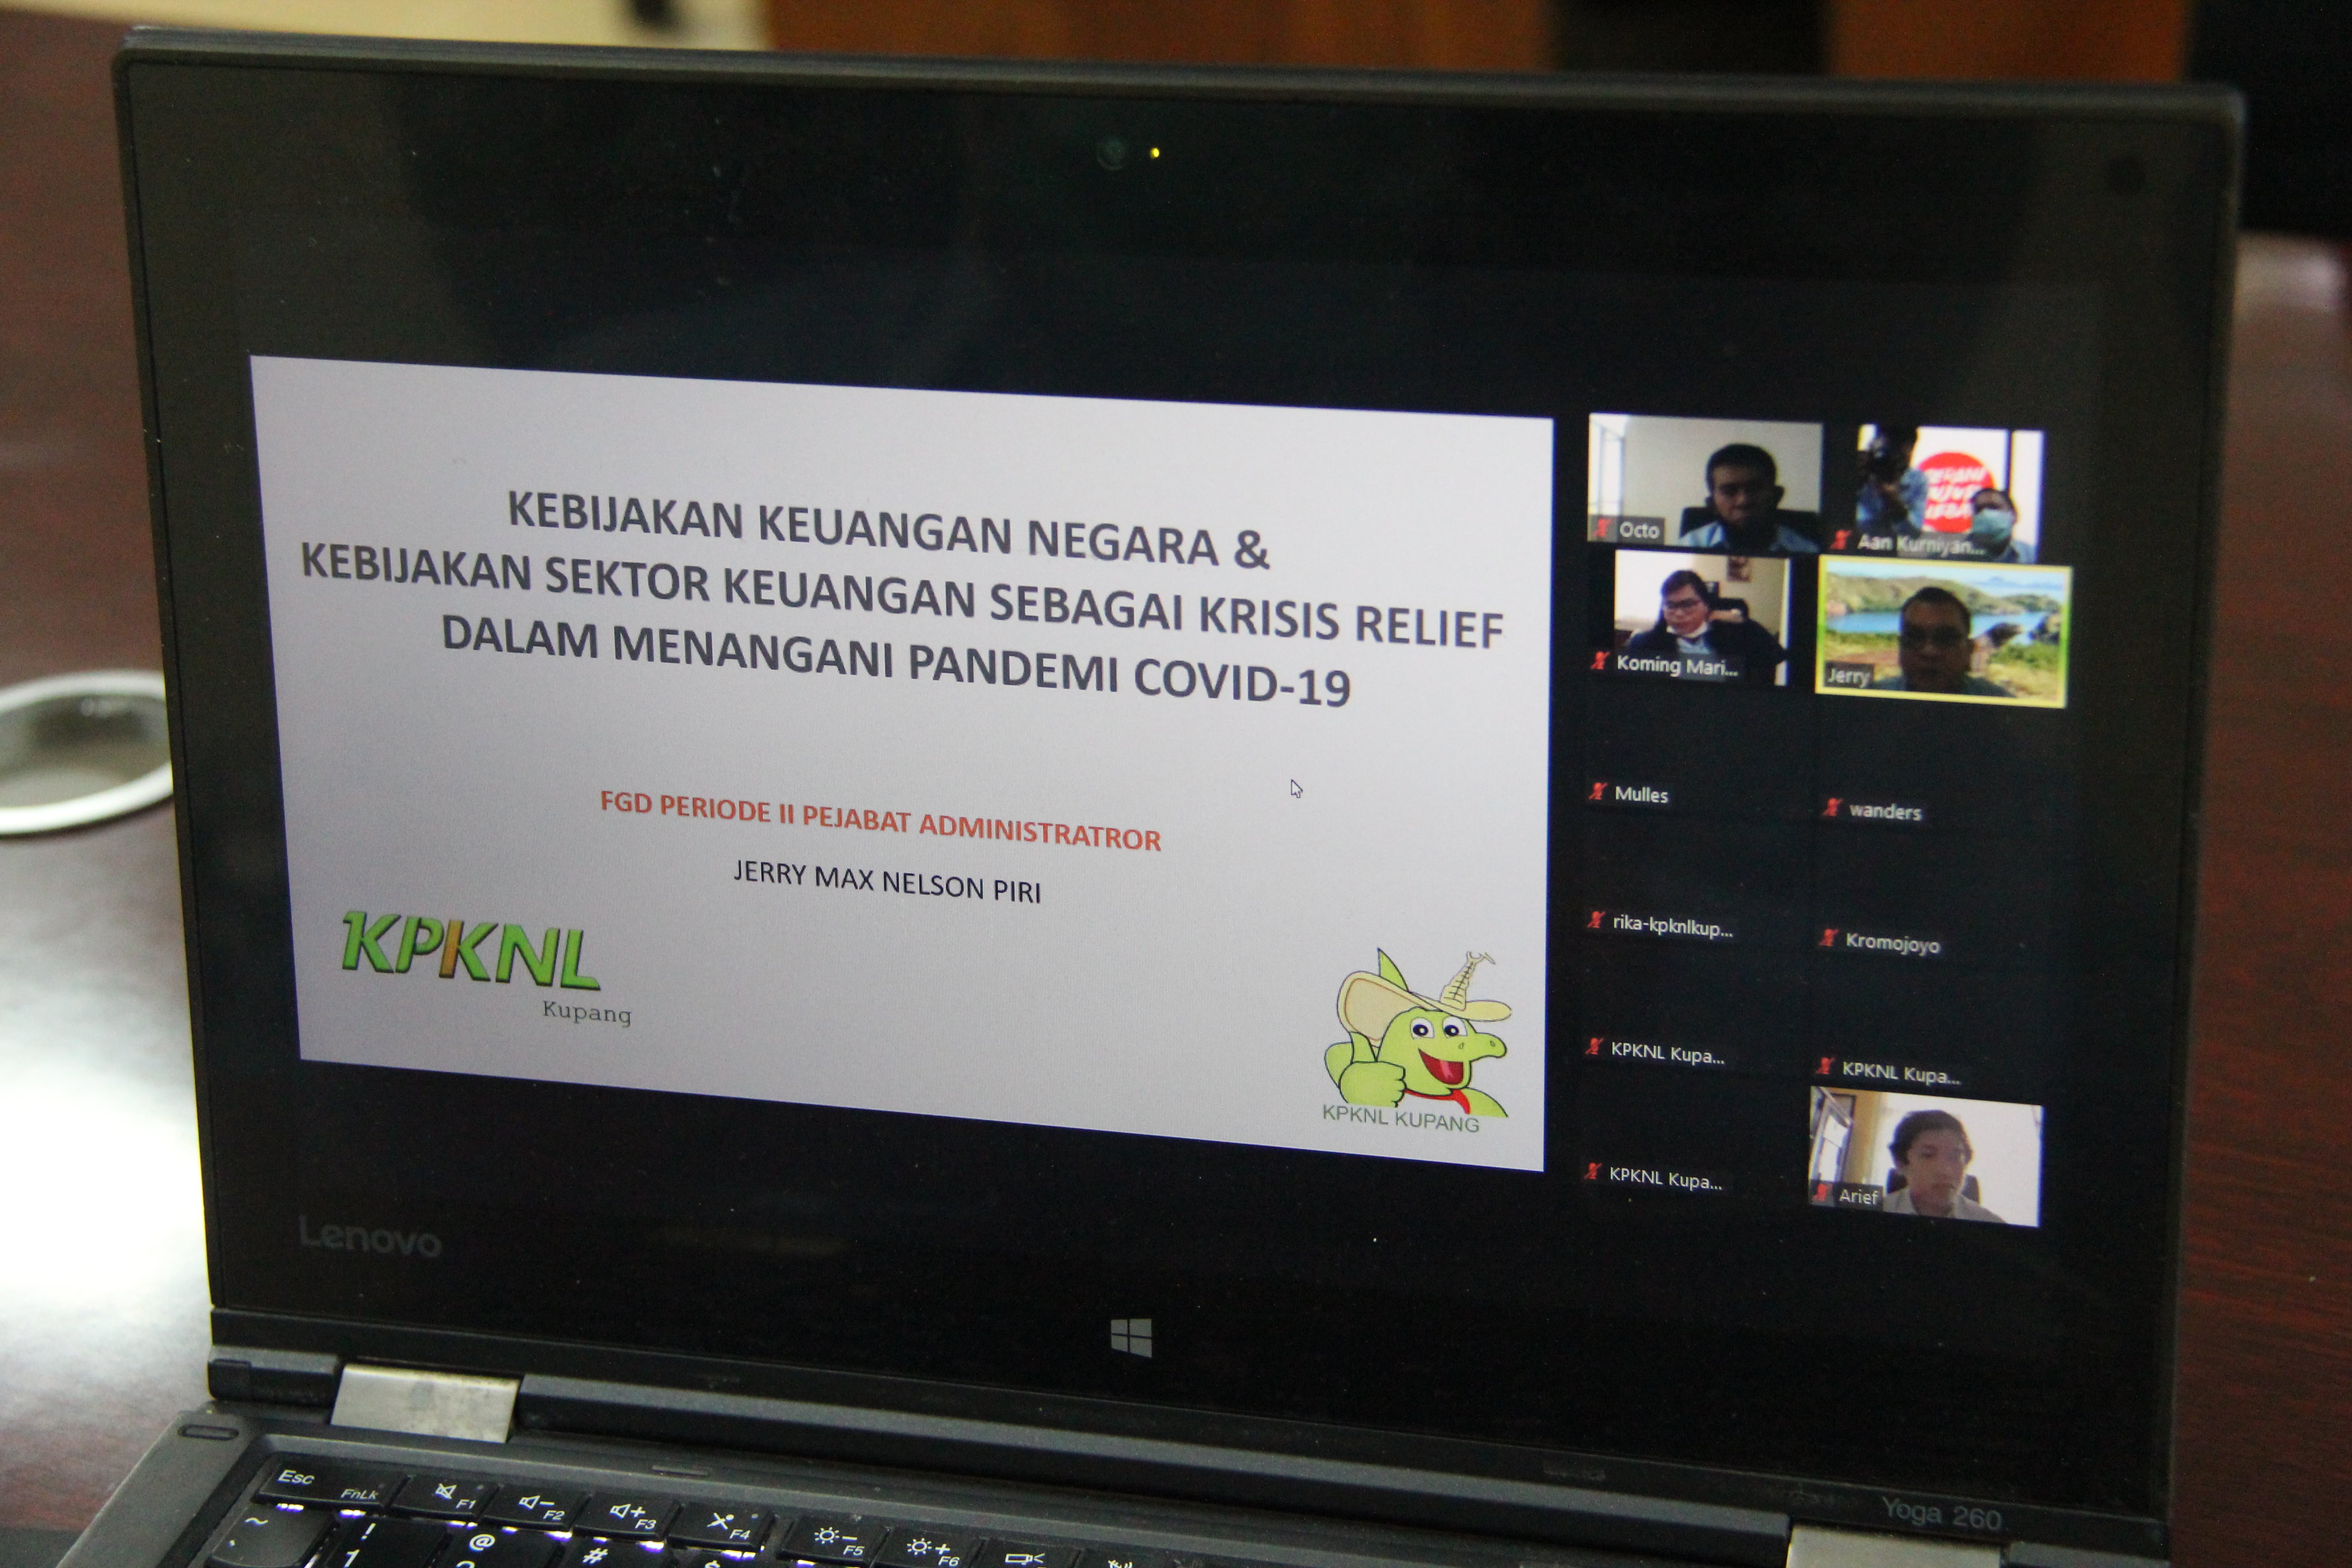 KPKNL Kupang adakan Forum Group Discussion: "Kebijakan Keuangan Negara sebagai Crisis Relief dalam Menangani  Pandemi COVID-19"